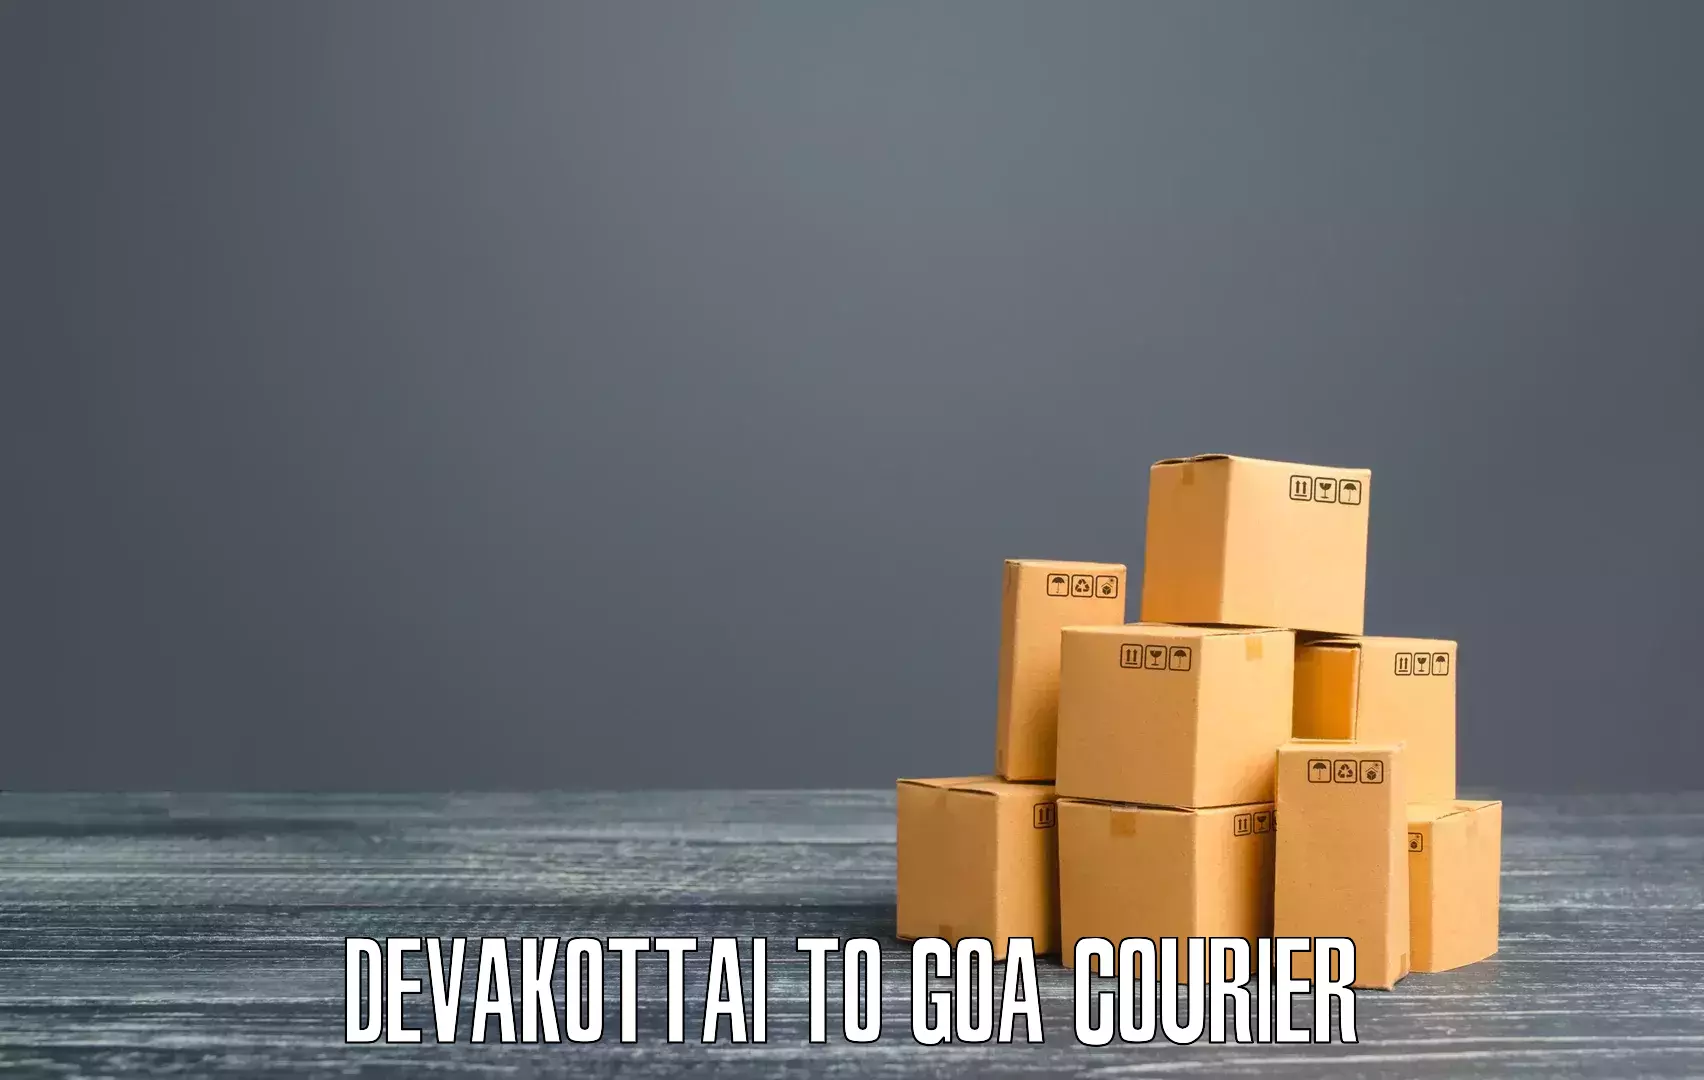 Scheduled delivery Devakottai to Goa